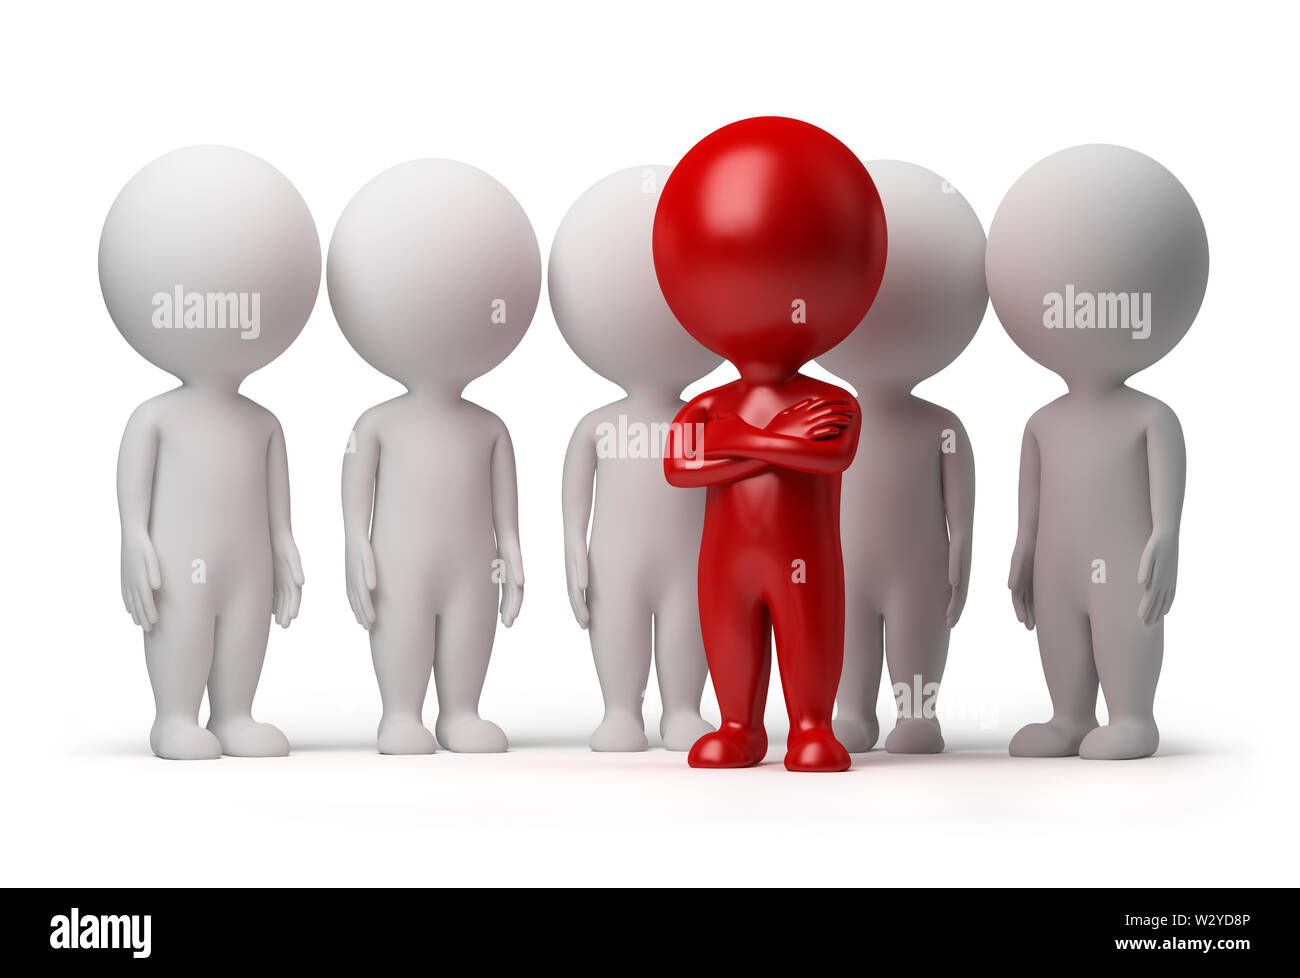 Petite personne 3d le chef d'une équipe affectée par la couleur rouge. Image 3d. Isolé sur fond blanc. Banque D'Images